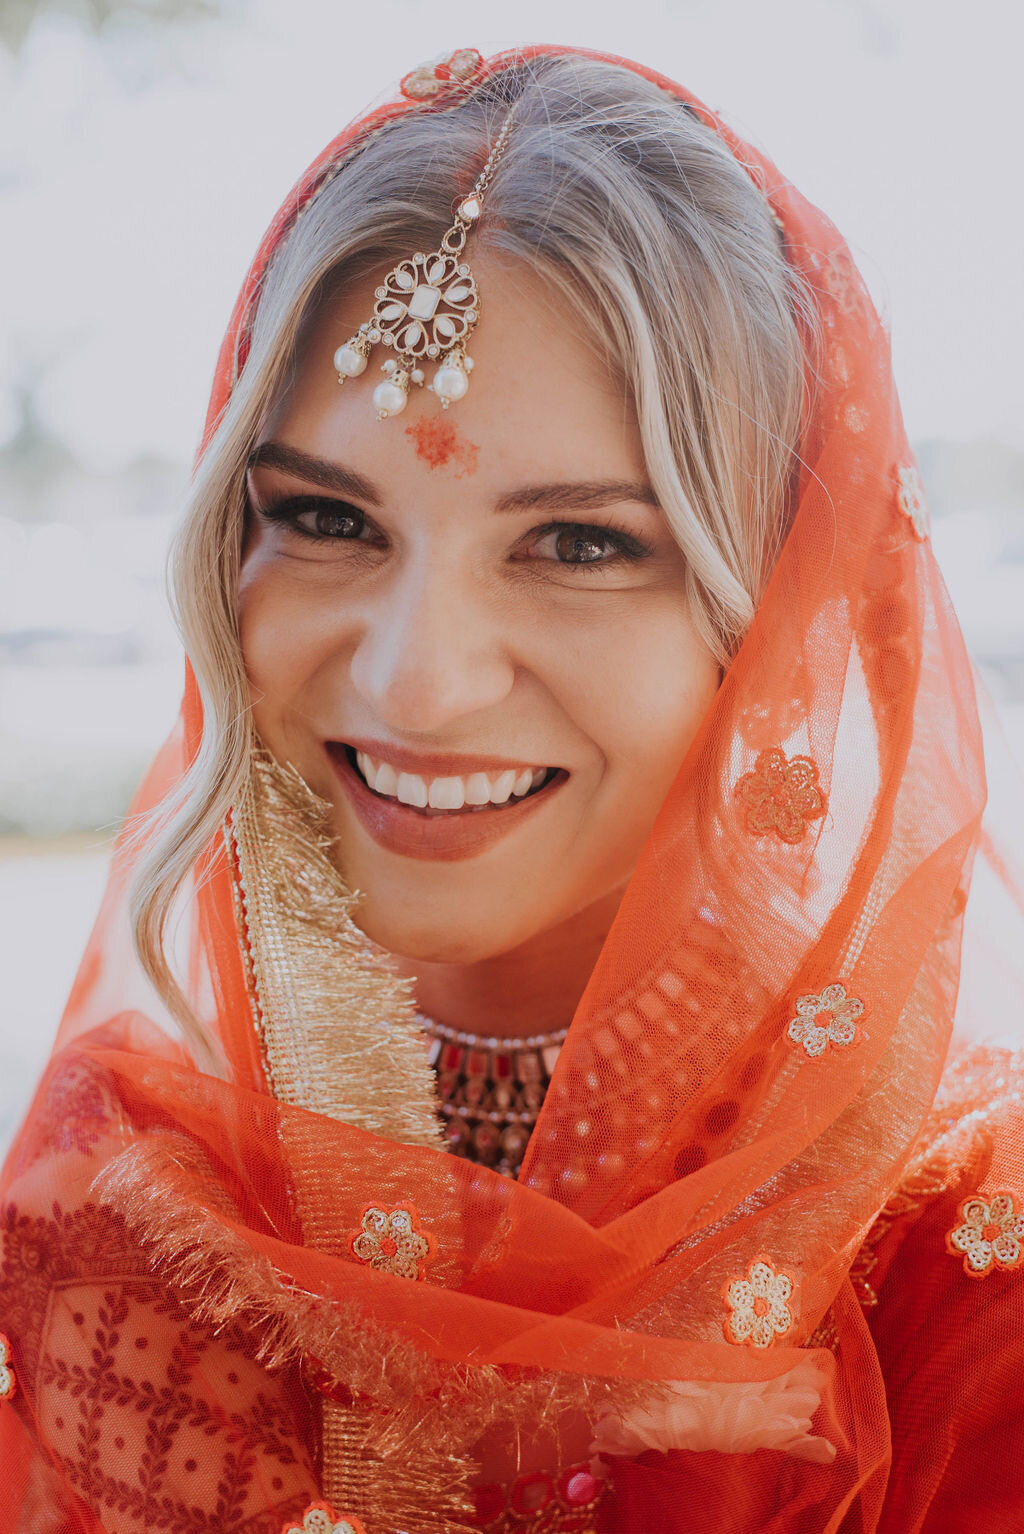 A bride in a hindu sari  smiles